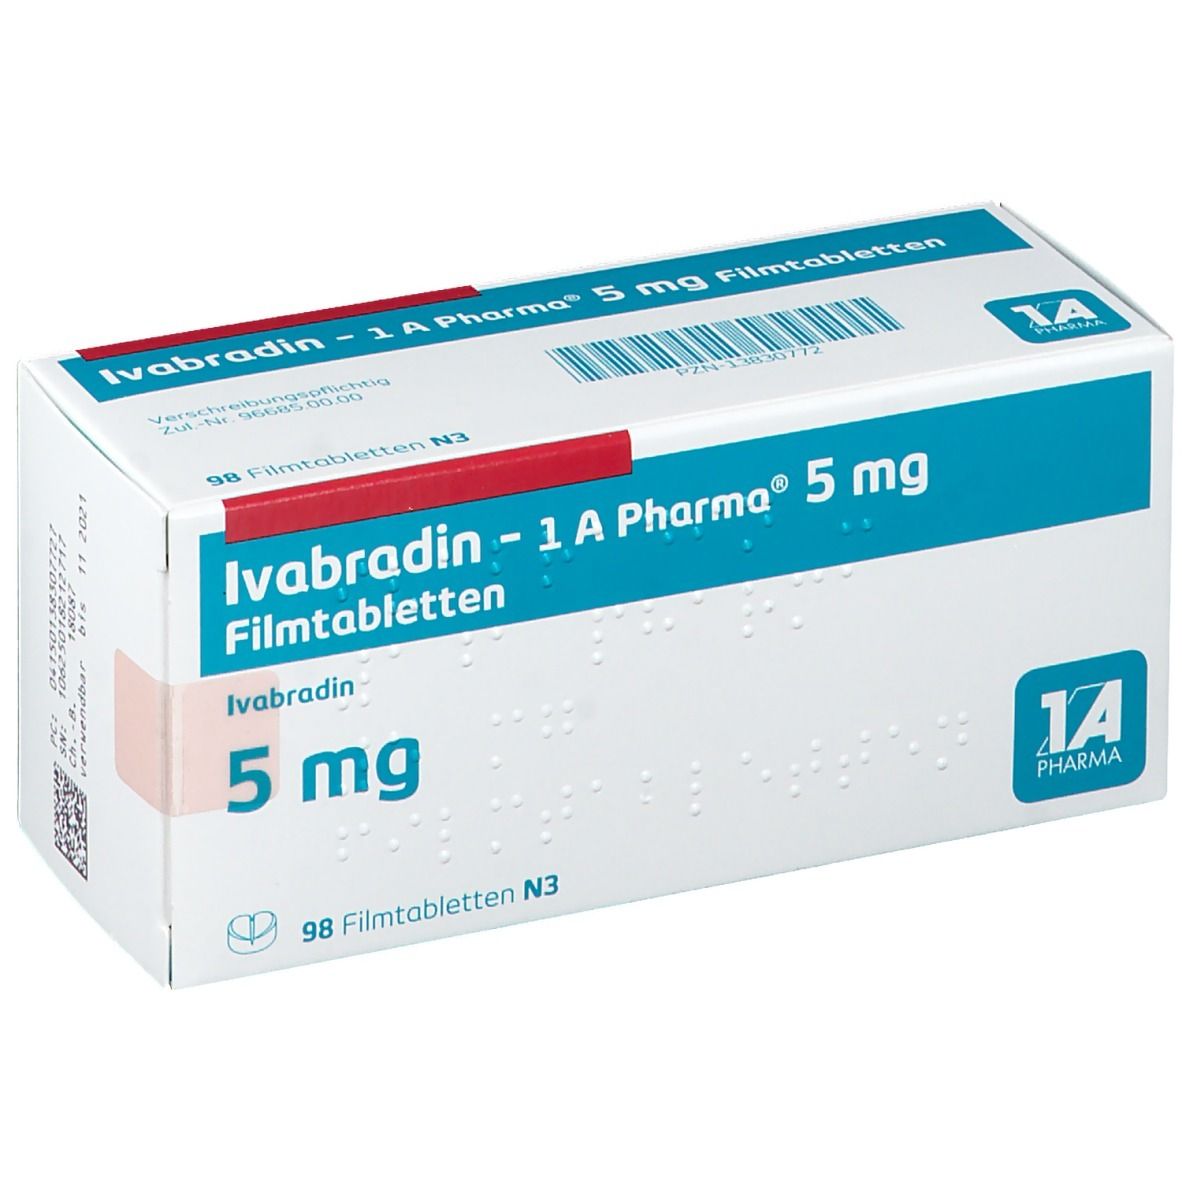 Ivabradin 1A Pharma® 5Mg